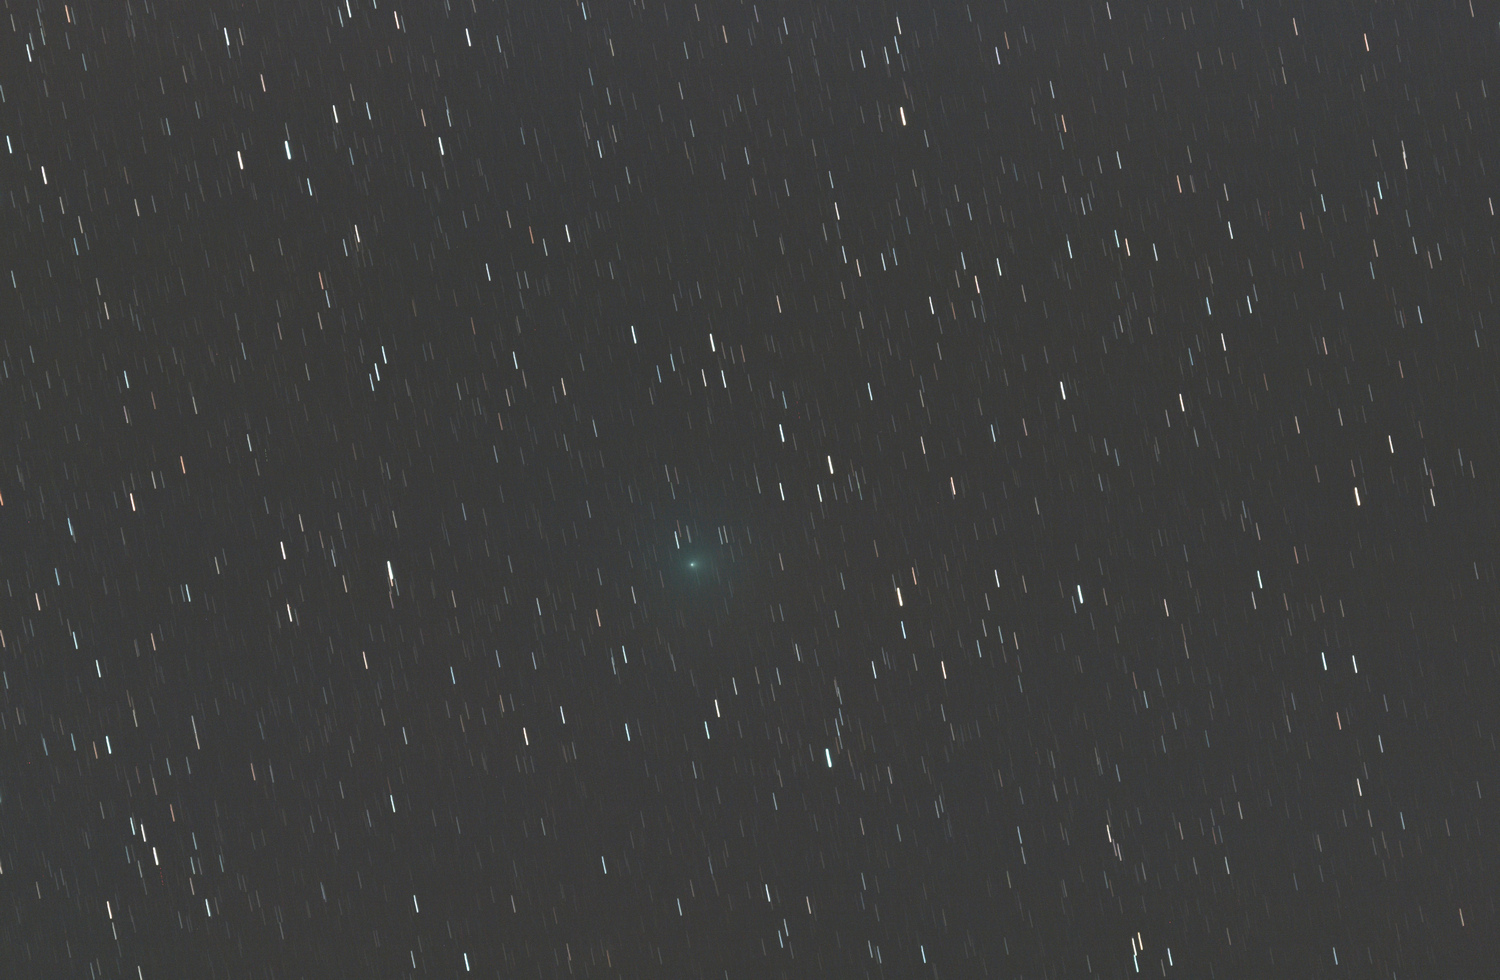 Comete_M3_w.jpg.f6229c5866987a1a410978dfea31560c.jpg